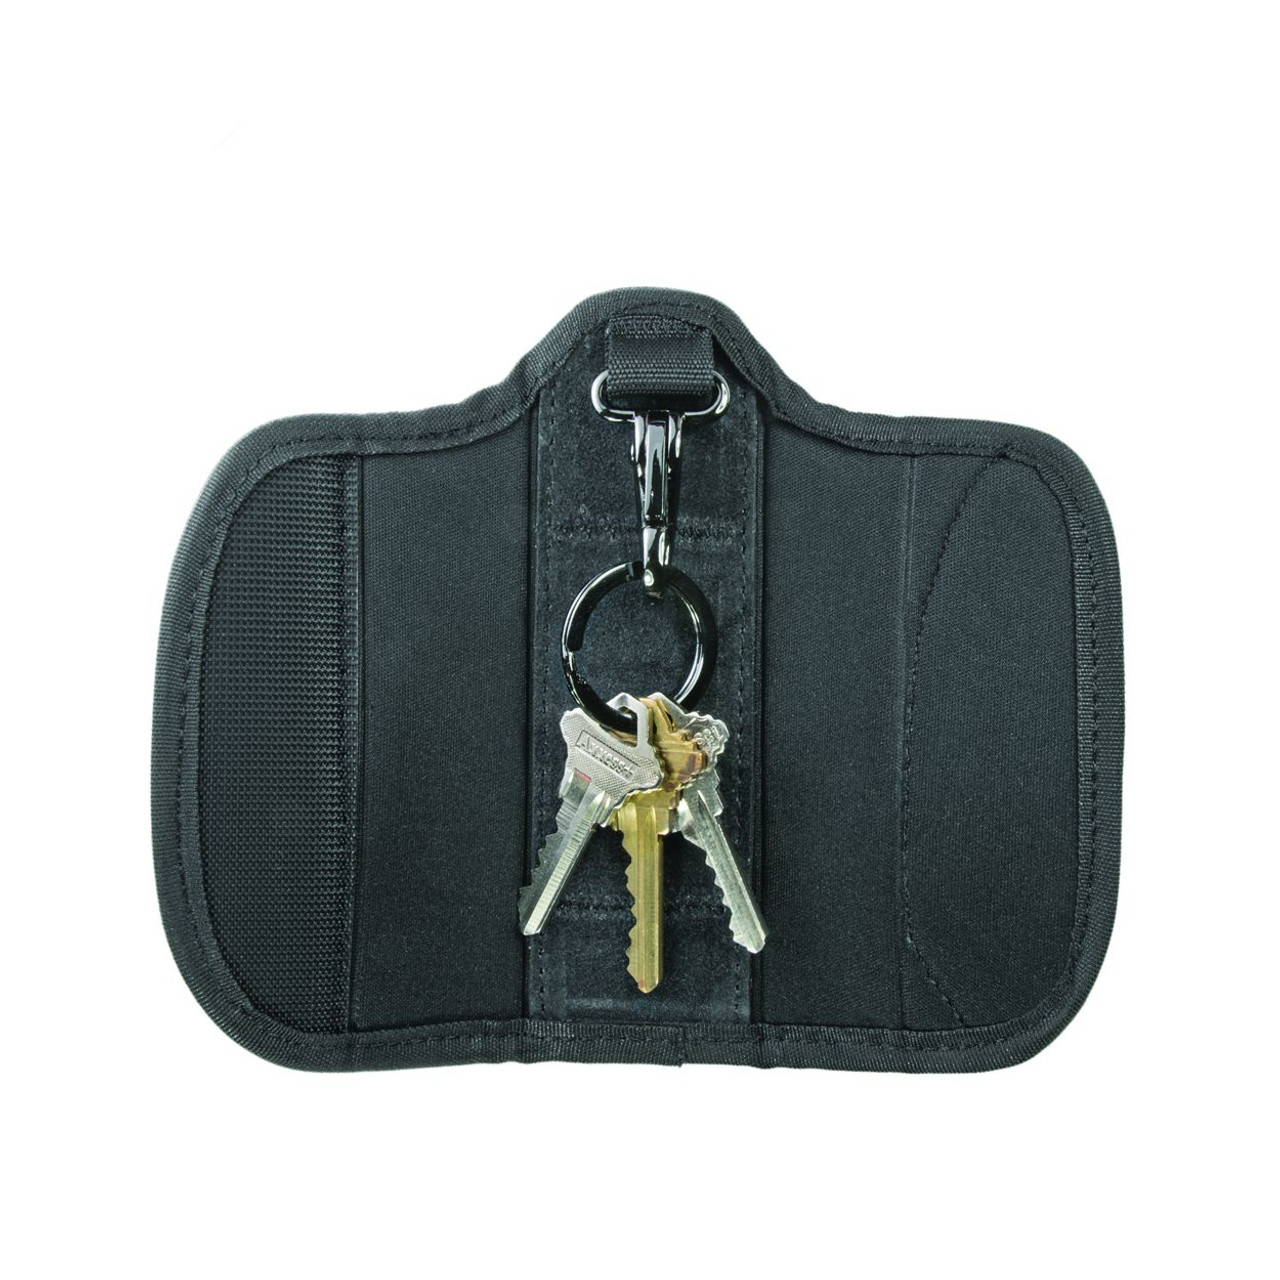 4 key pouch